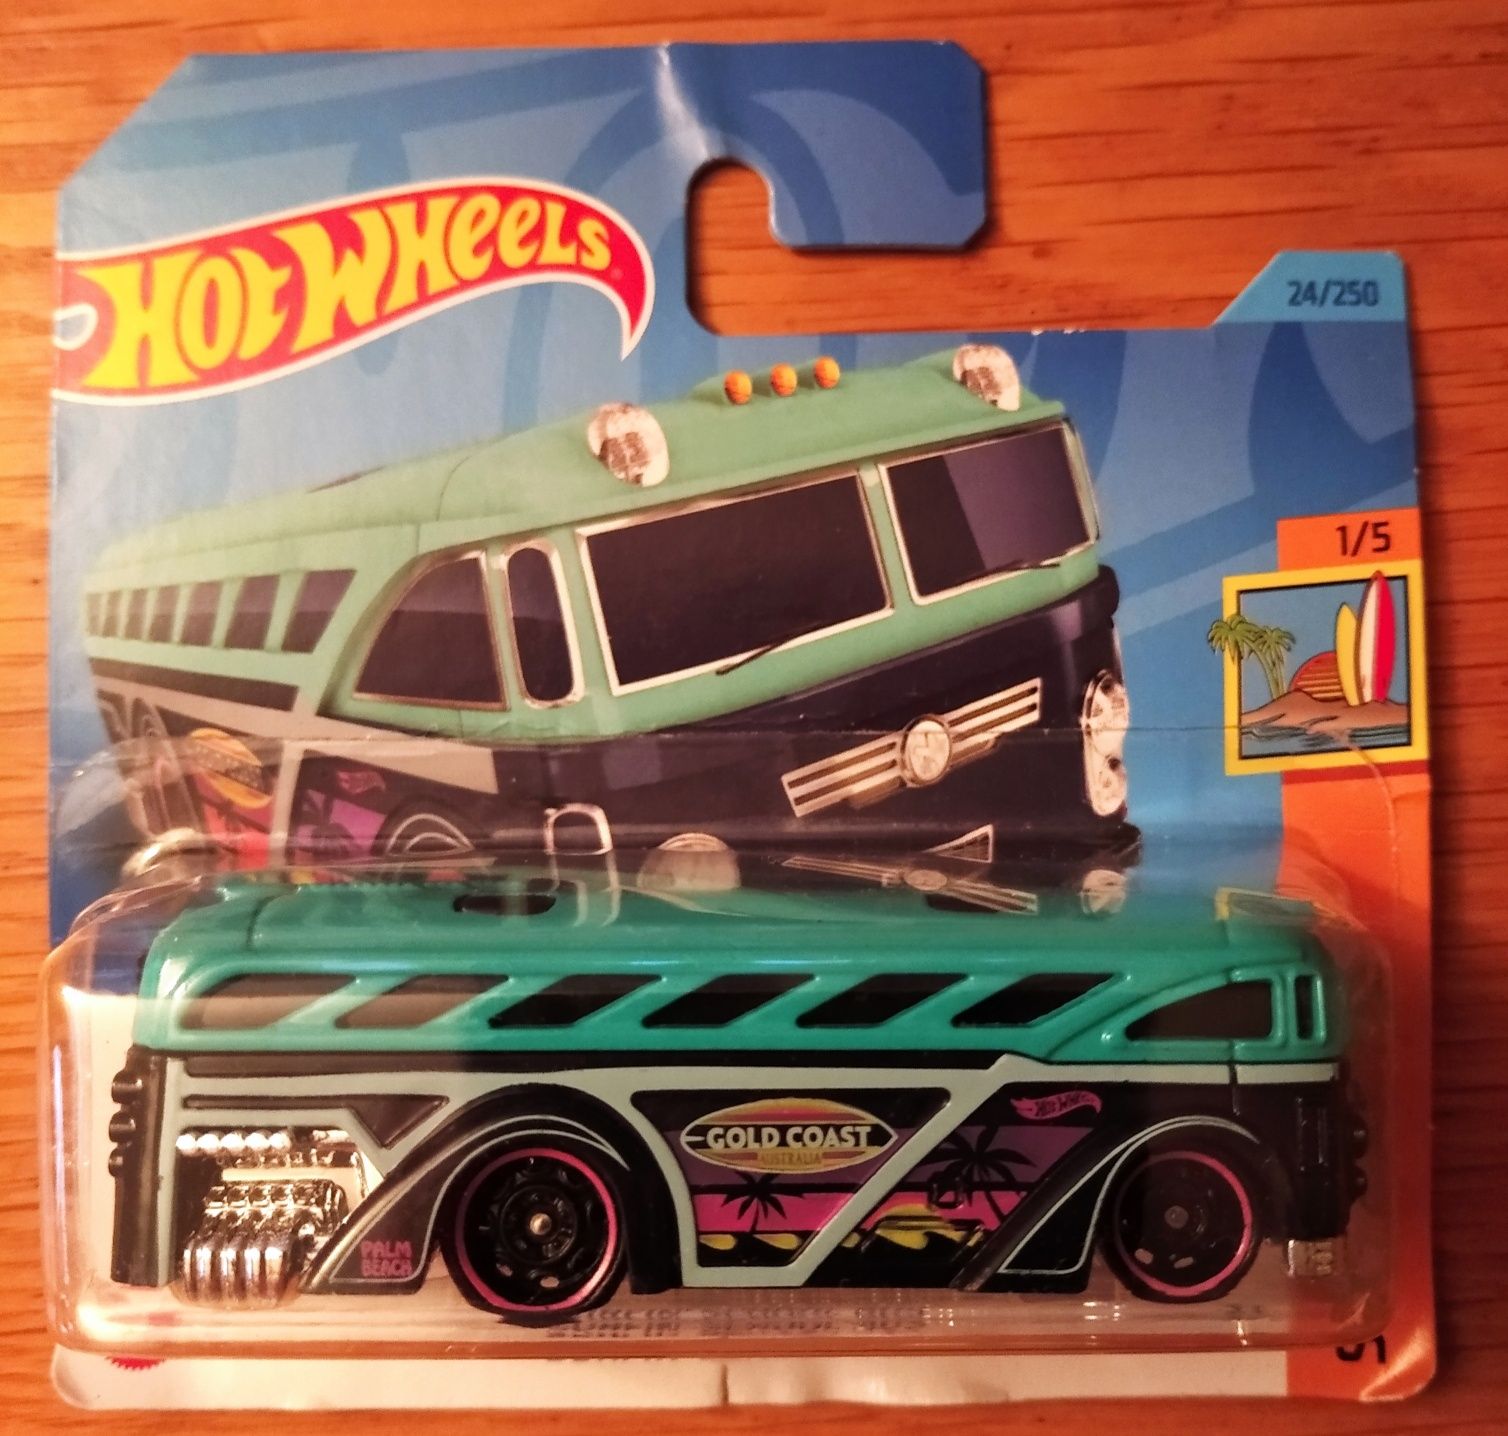 Hot Wheels модель Surfin' school bus (24/250) запечатанная